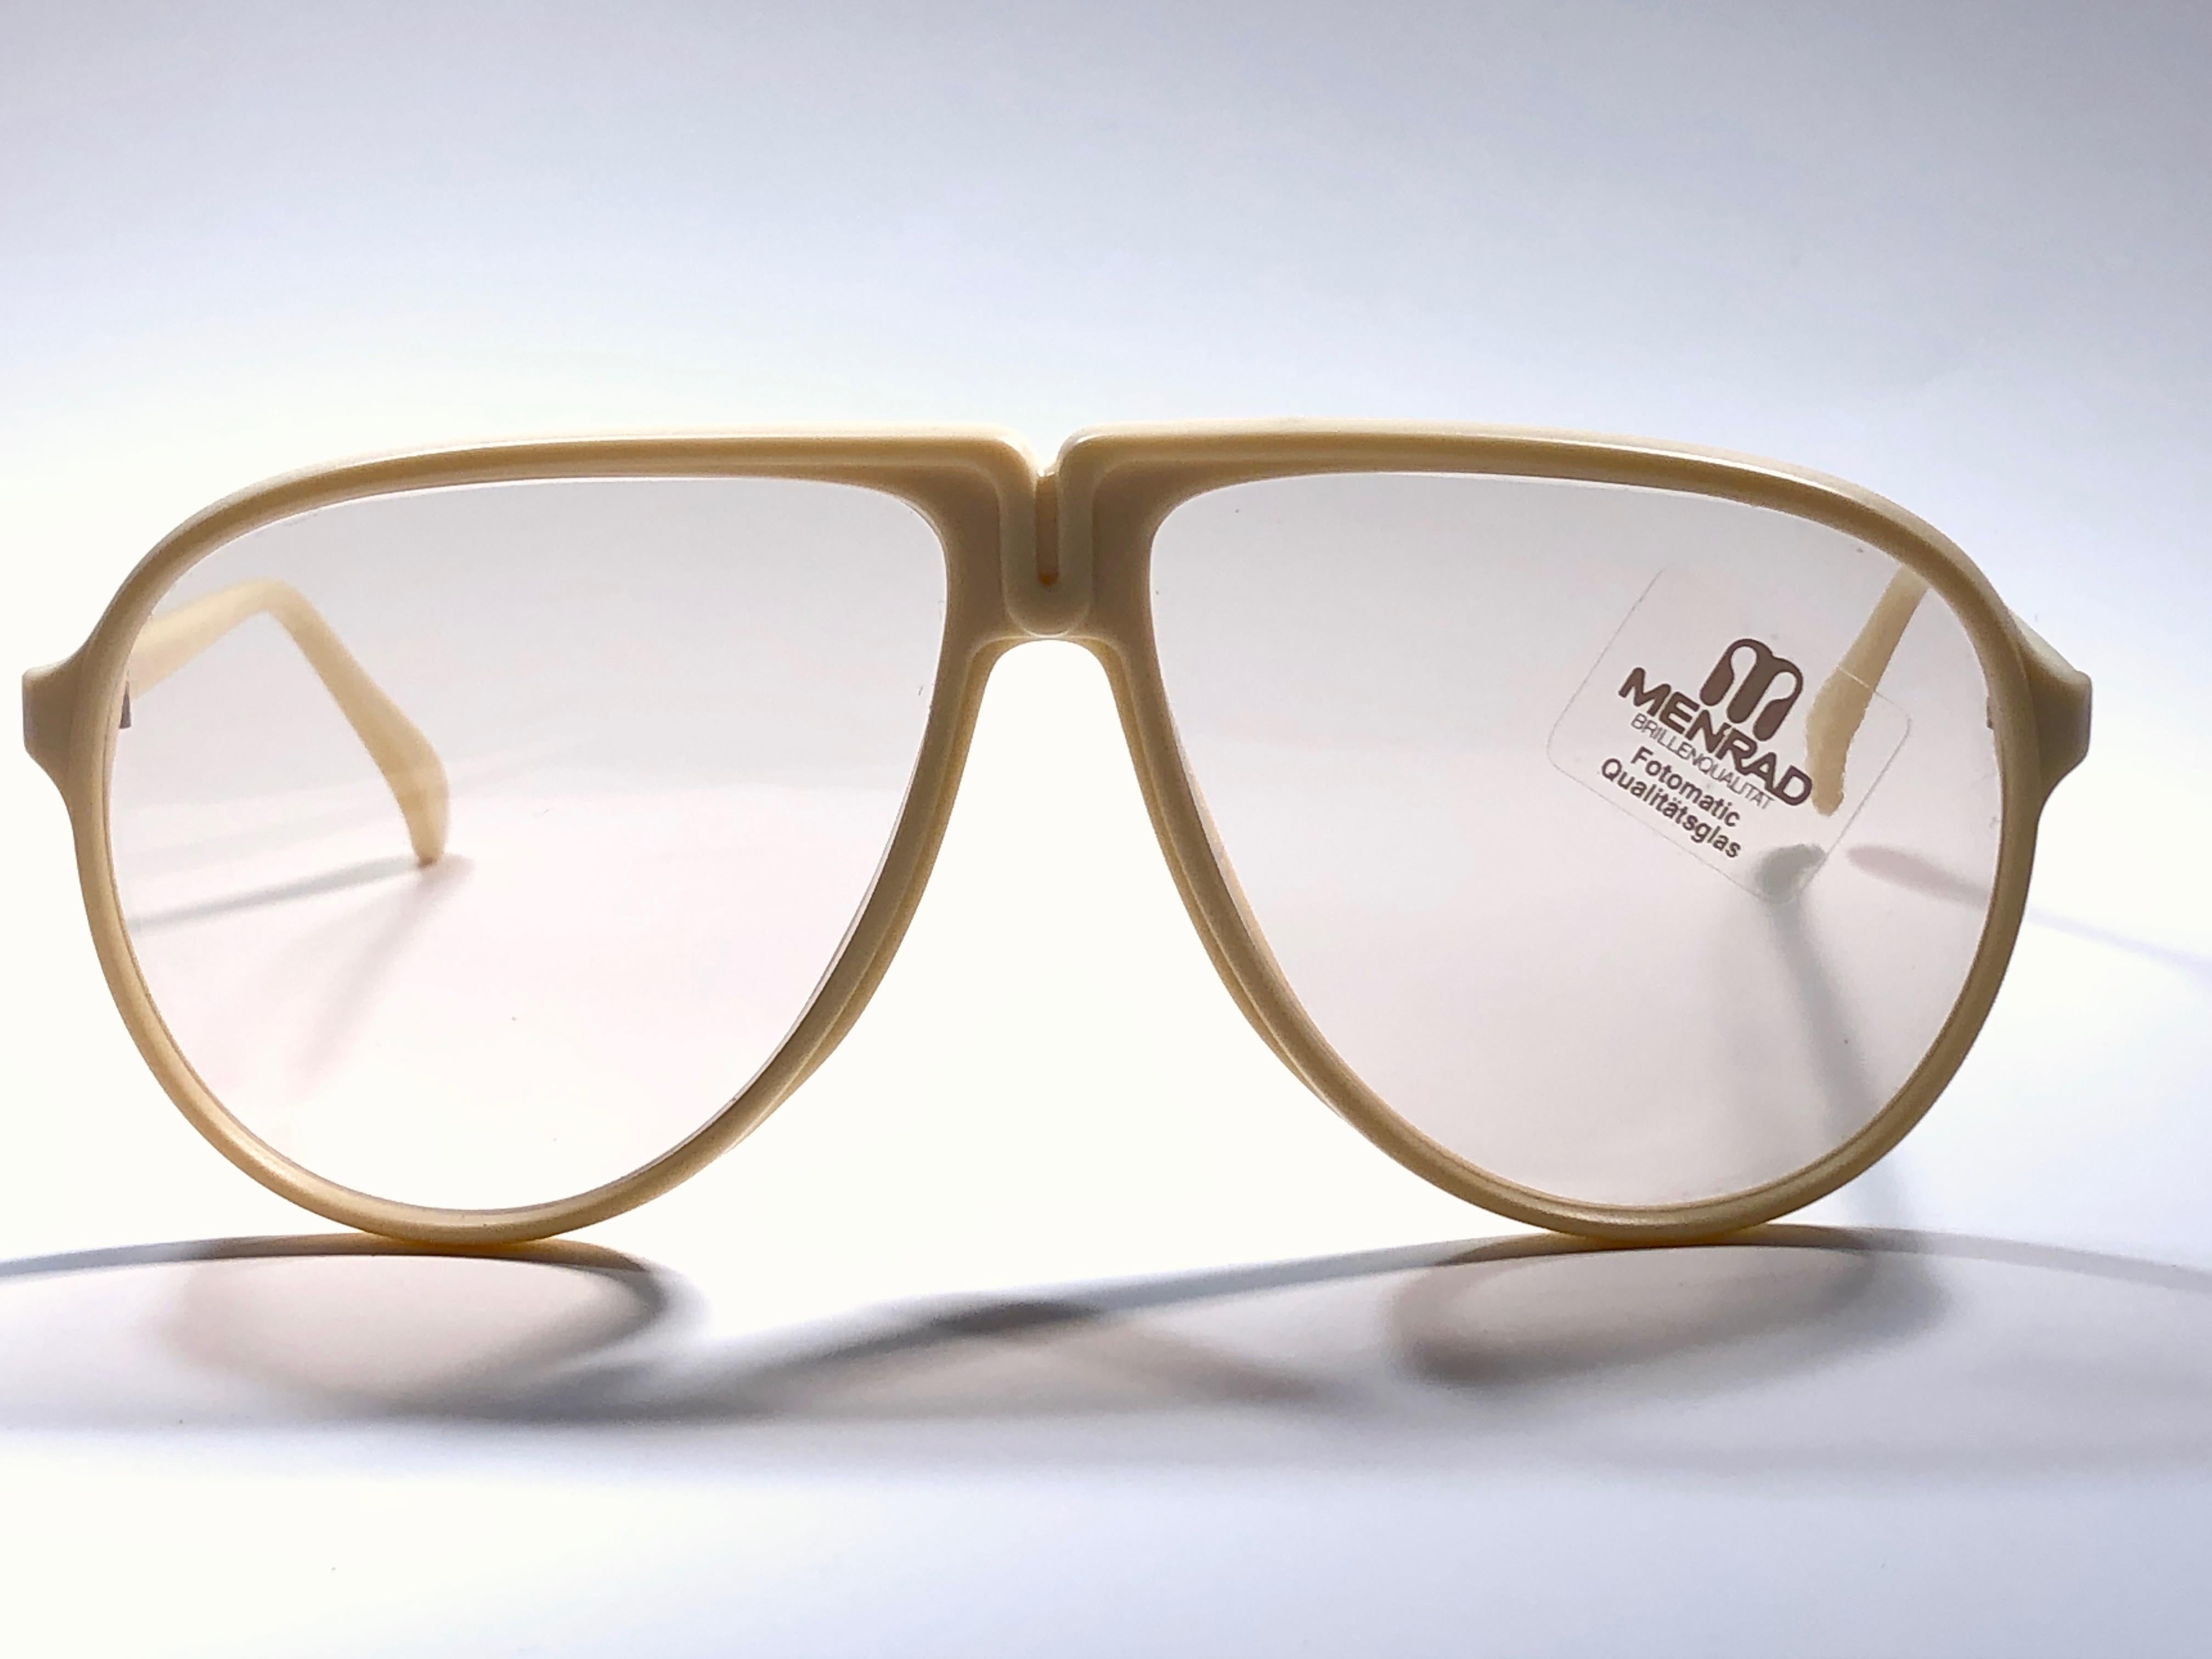 Nouveau Vintage Menrad Oversized Beige Sunglasses cadre tenant une paire impeccable de lentilles interchangeables.

Fabriqué en Allemagne dans les années 1970.

Cet article peut présenter des signes mineurs d'usure dus au stockage.

Devant : 15